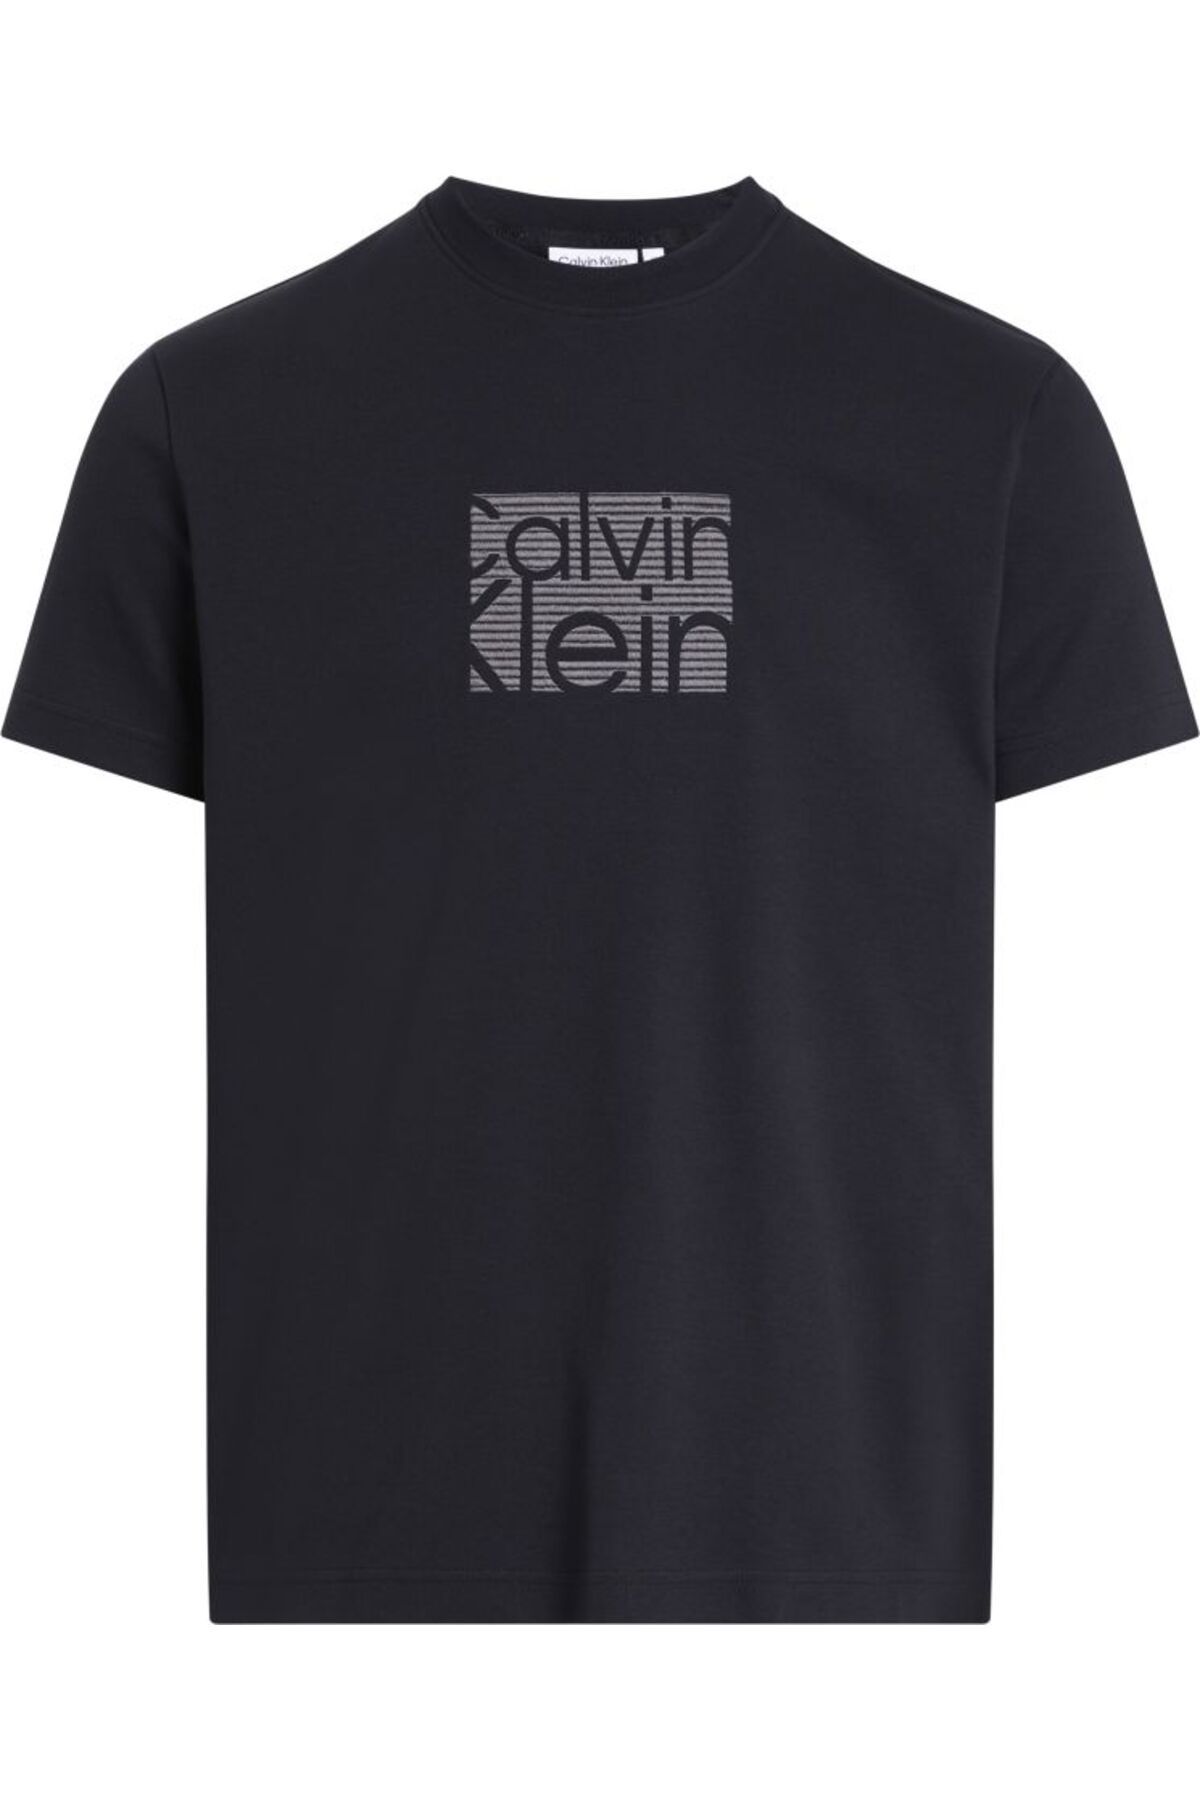 Calvin Klein Calvin Klein پیراهن مردانه بافته شده ارگانیک